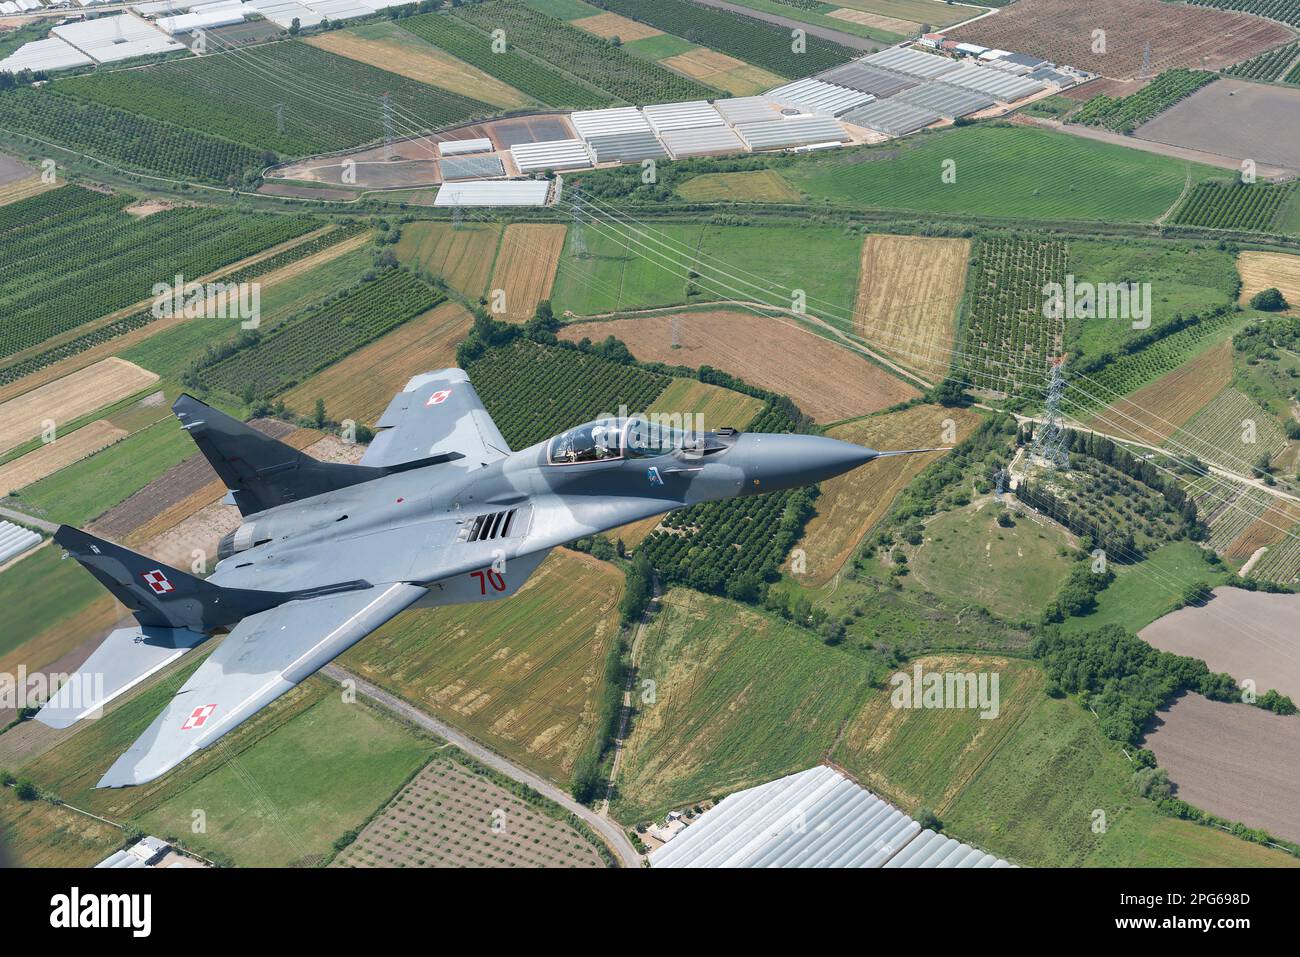 Avion de chasse MIG-29 de la Force aérienne polonaise survolant la campagne turque pendant un vol aérien Banque D'Images